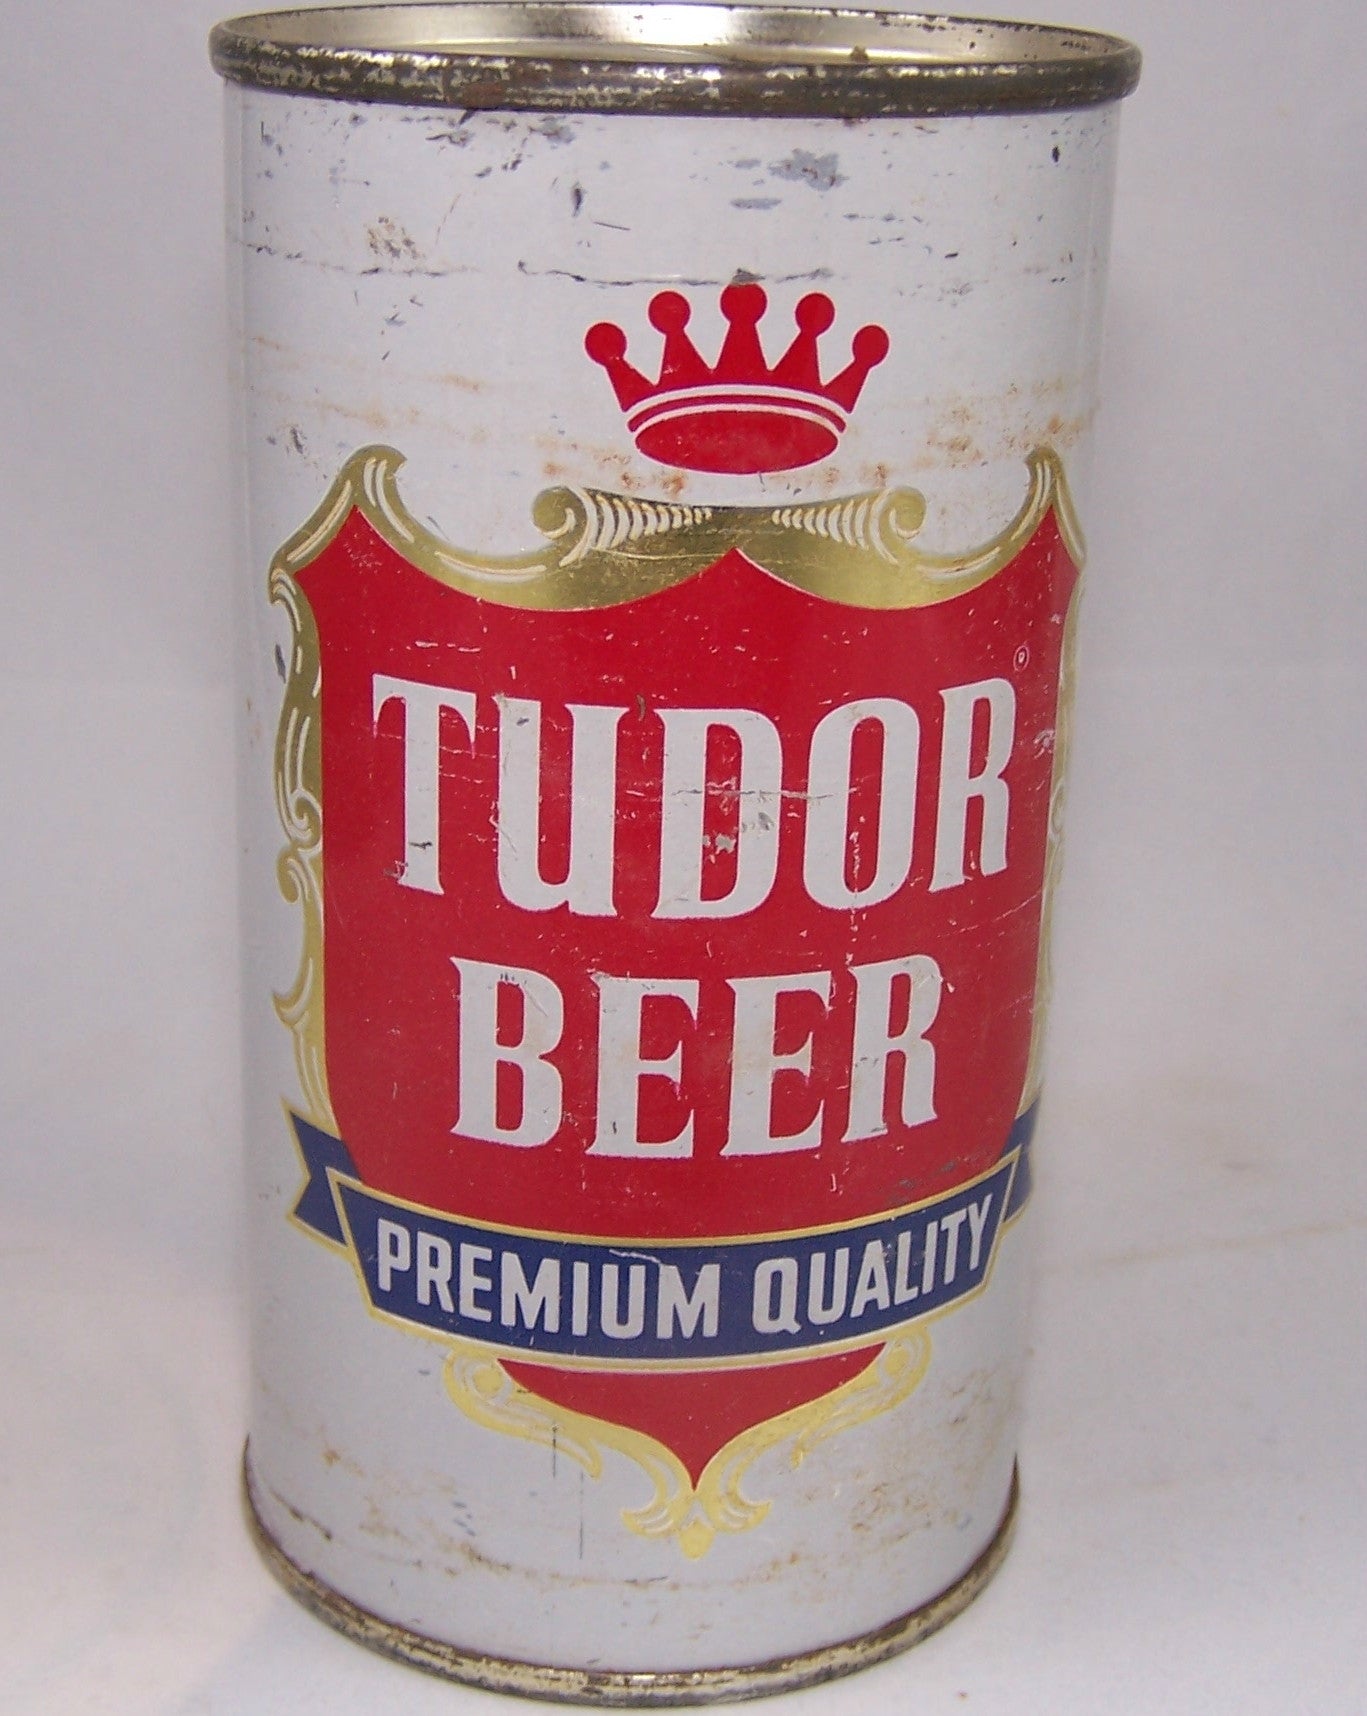 Tudor Beer, USBC 141-3, Grade 1-